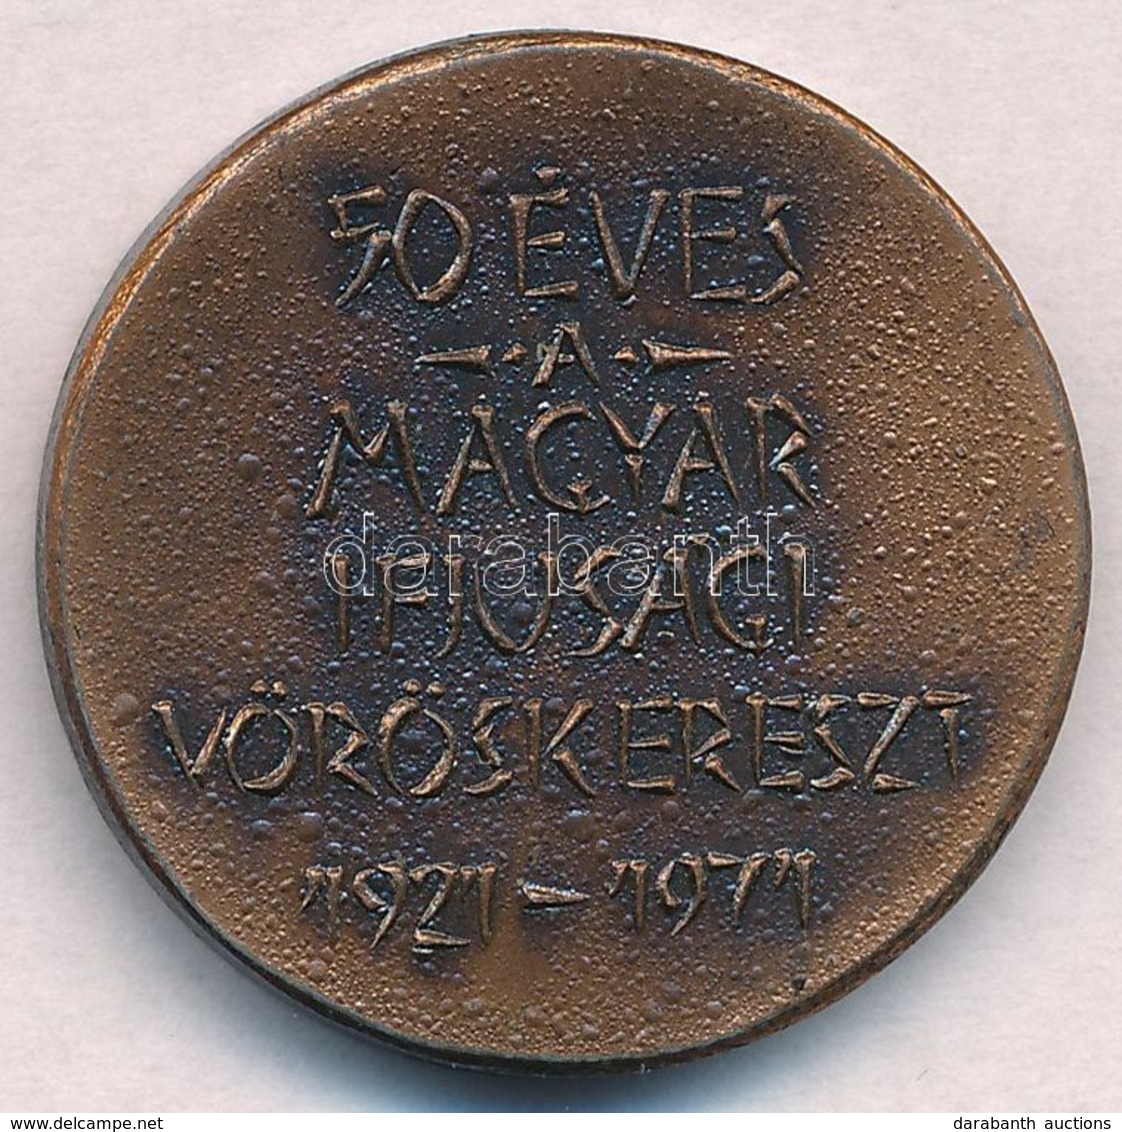 1971. '50 éves A Magyar Ifjúsági Vöröskereszt 1921-1971' Br Emlékérem (30mm) T:1-,2 - Unclassified